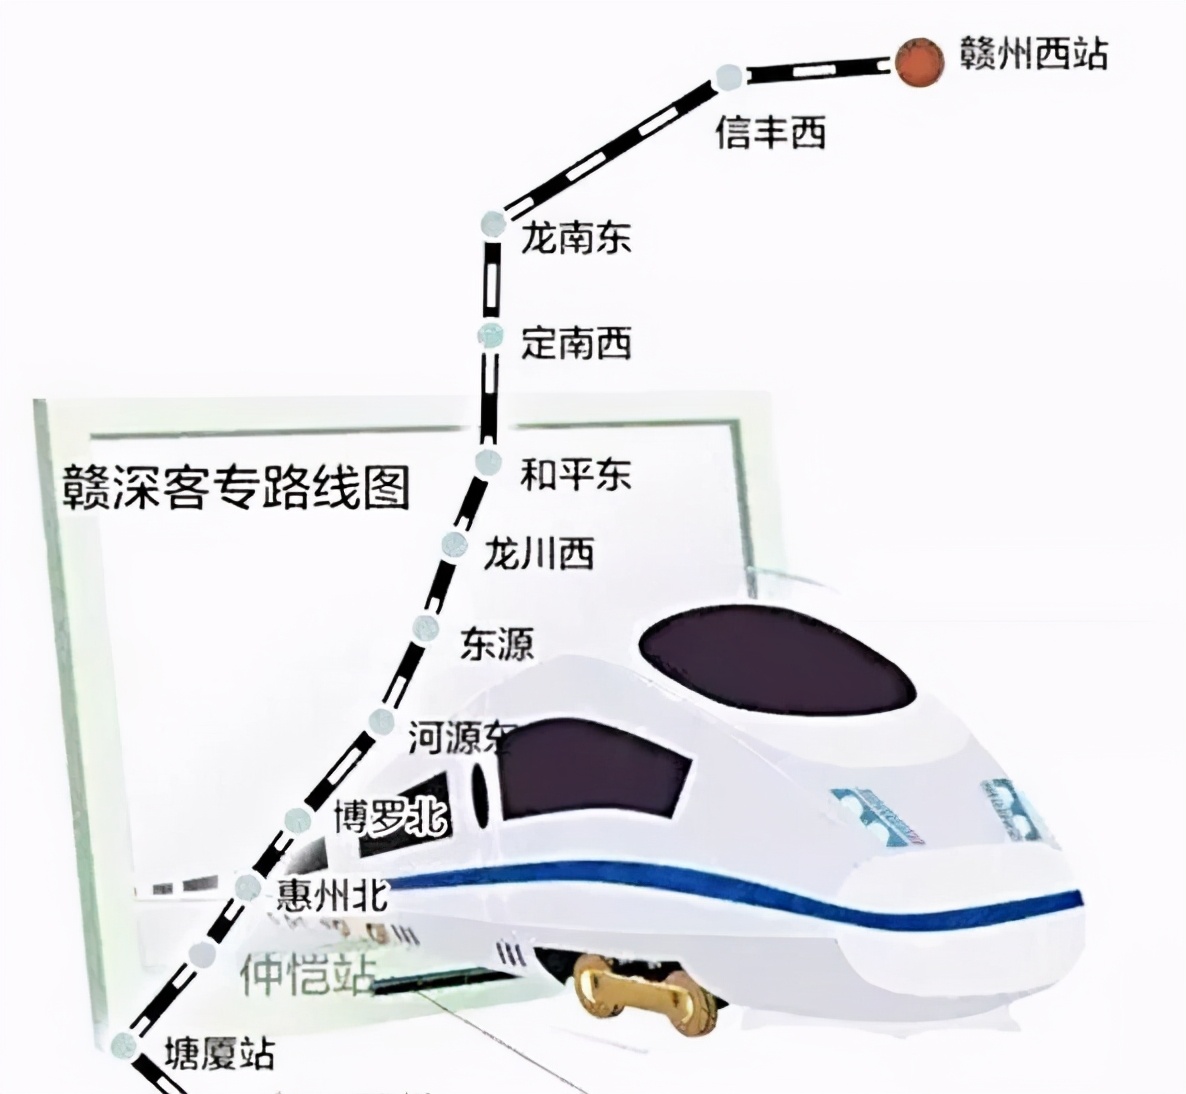 通车后,广汕高铁乘客可实现仲恺站中转换乘,目前即将进入全面铺